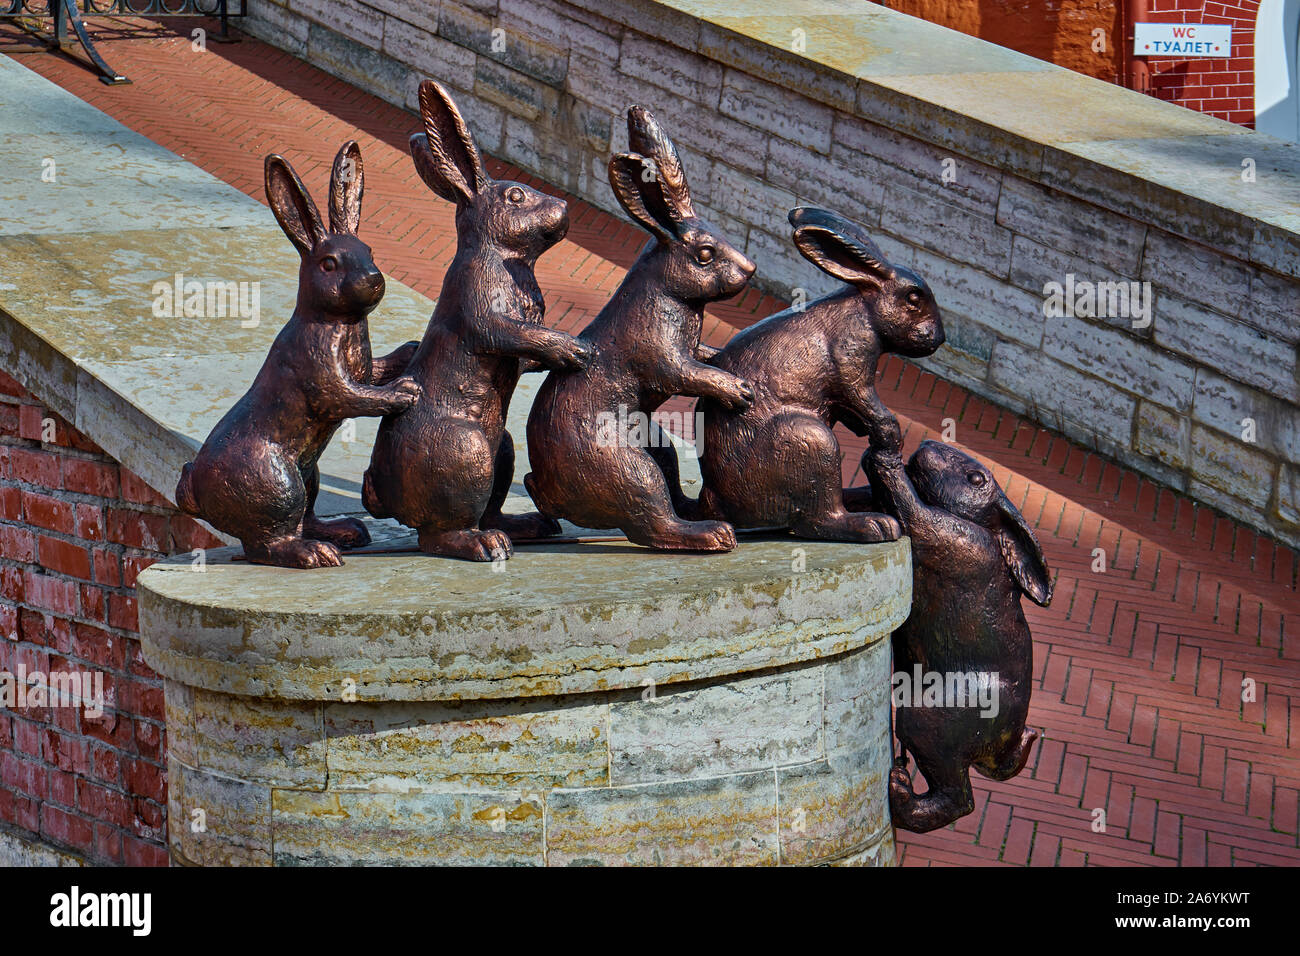 Skulptur von Hasen und Kaninchen, Sajatschi-Insel, Haseninsel, Petersburg, Russland Stock Photo